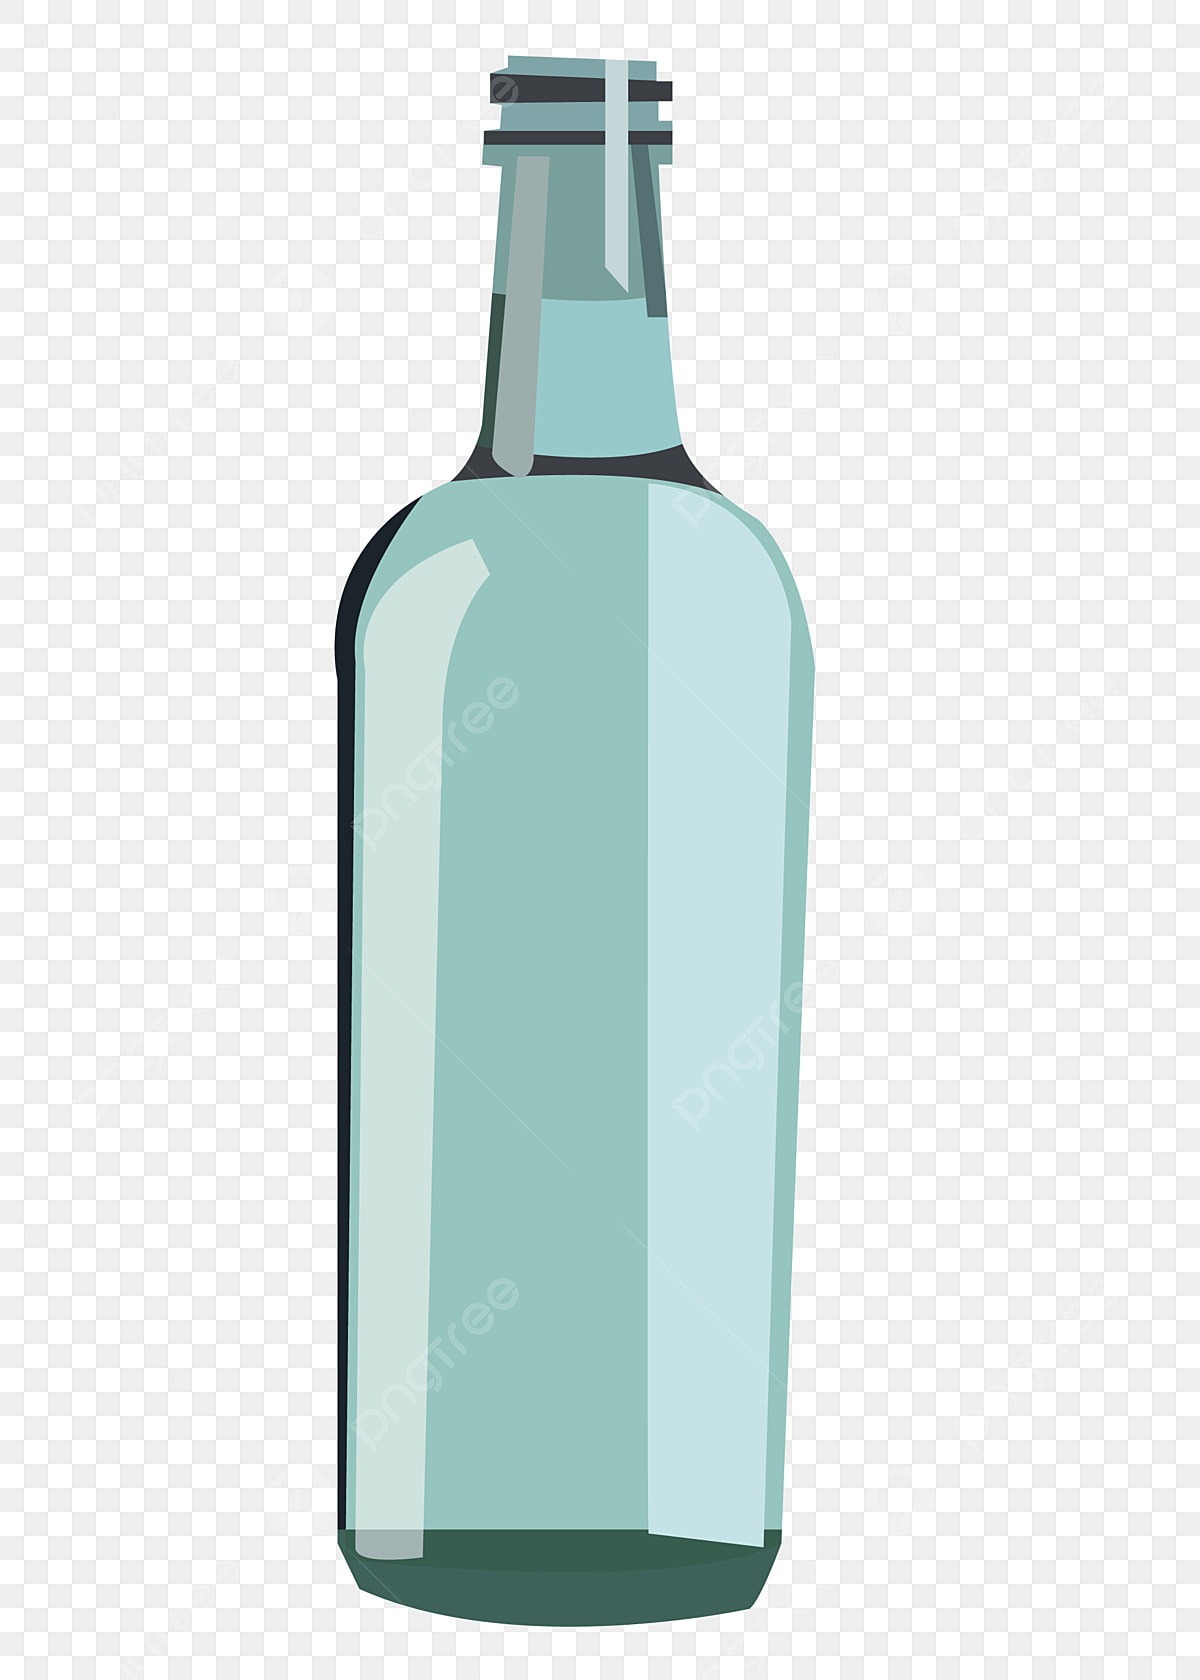 glass bottle clipart